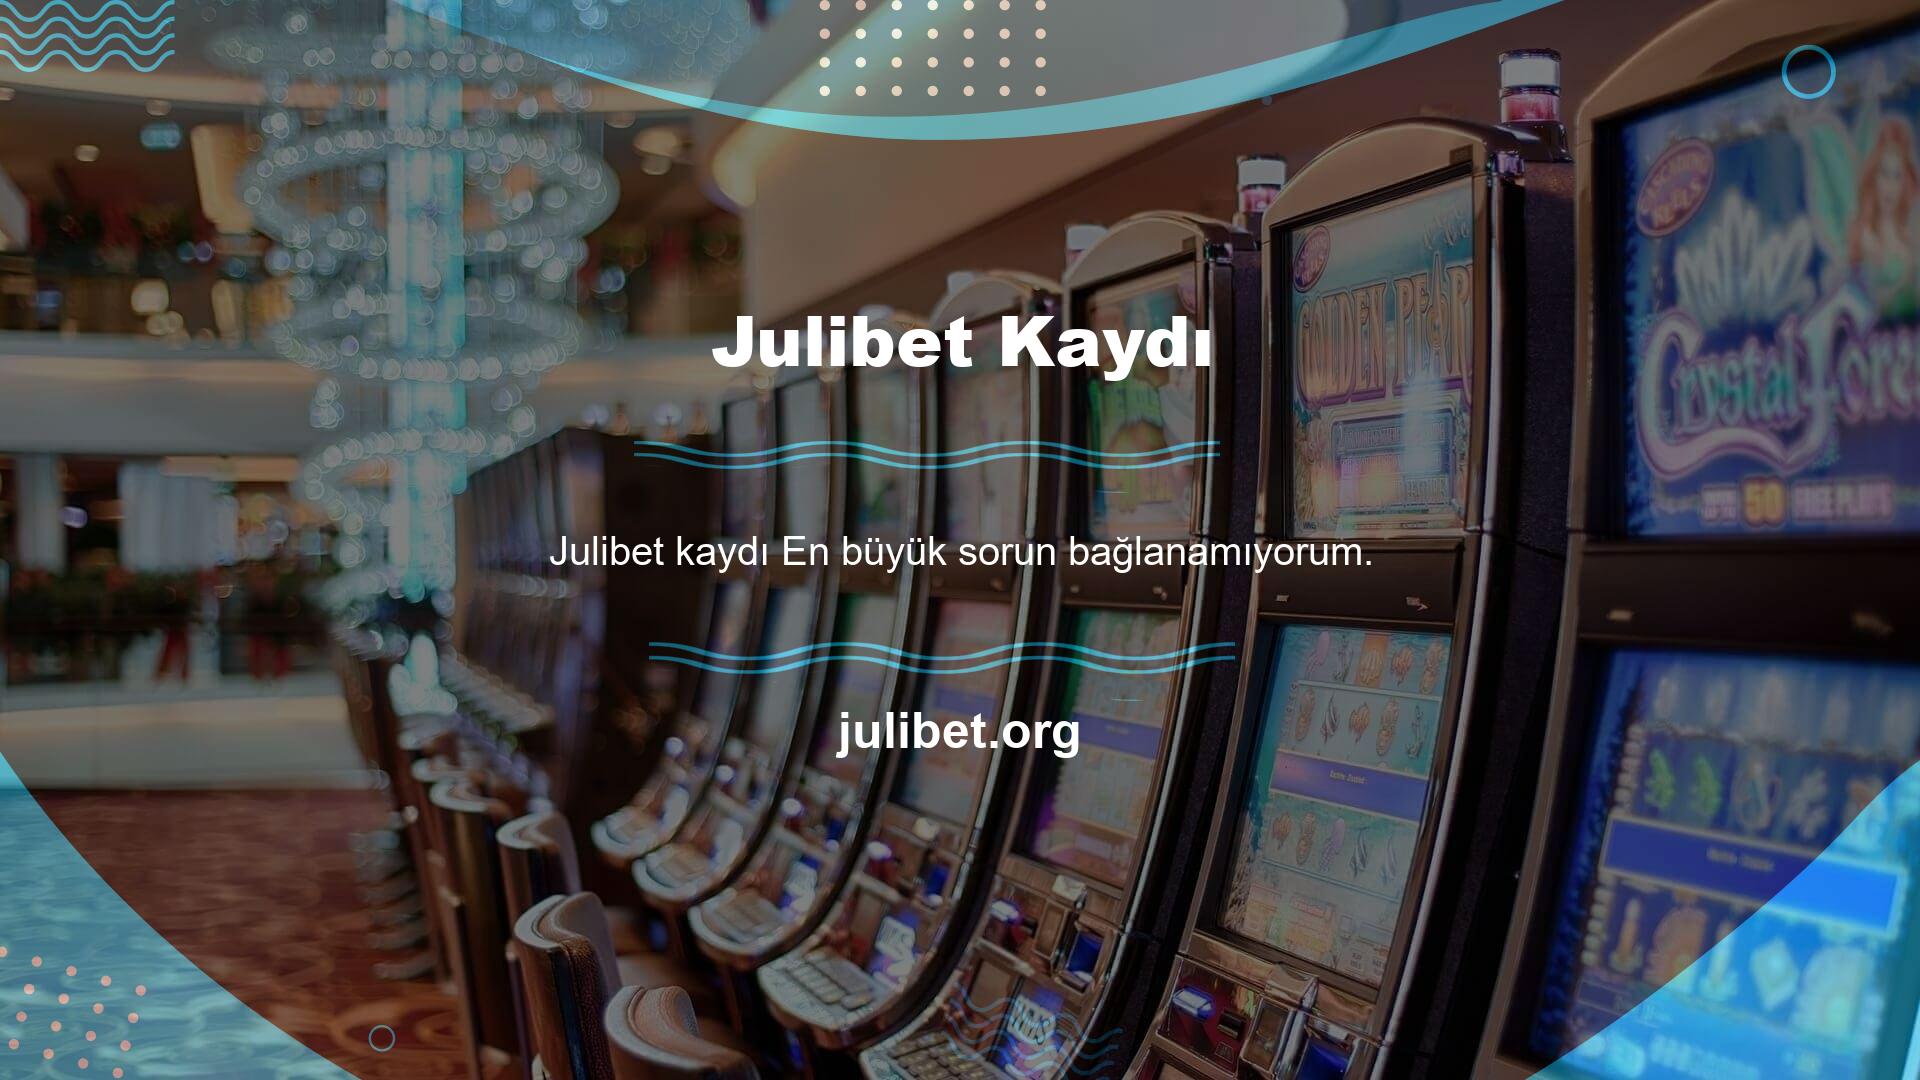 Casino ve casinolar oyun şirketleri, Türkiye'de internet engelleme hizmetlerinden şikayet etmeye devam ediyor ve derhal yasaklanıyor